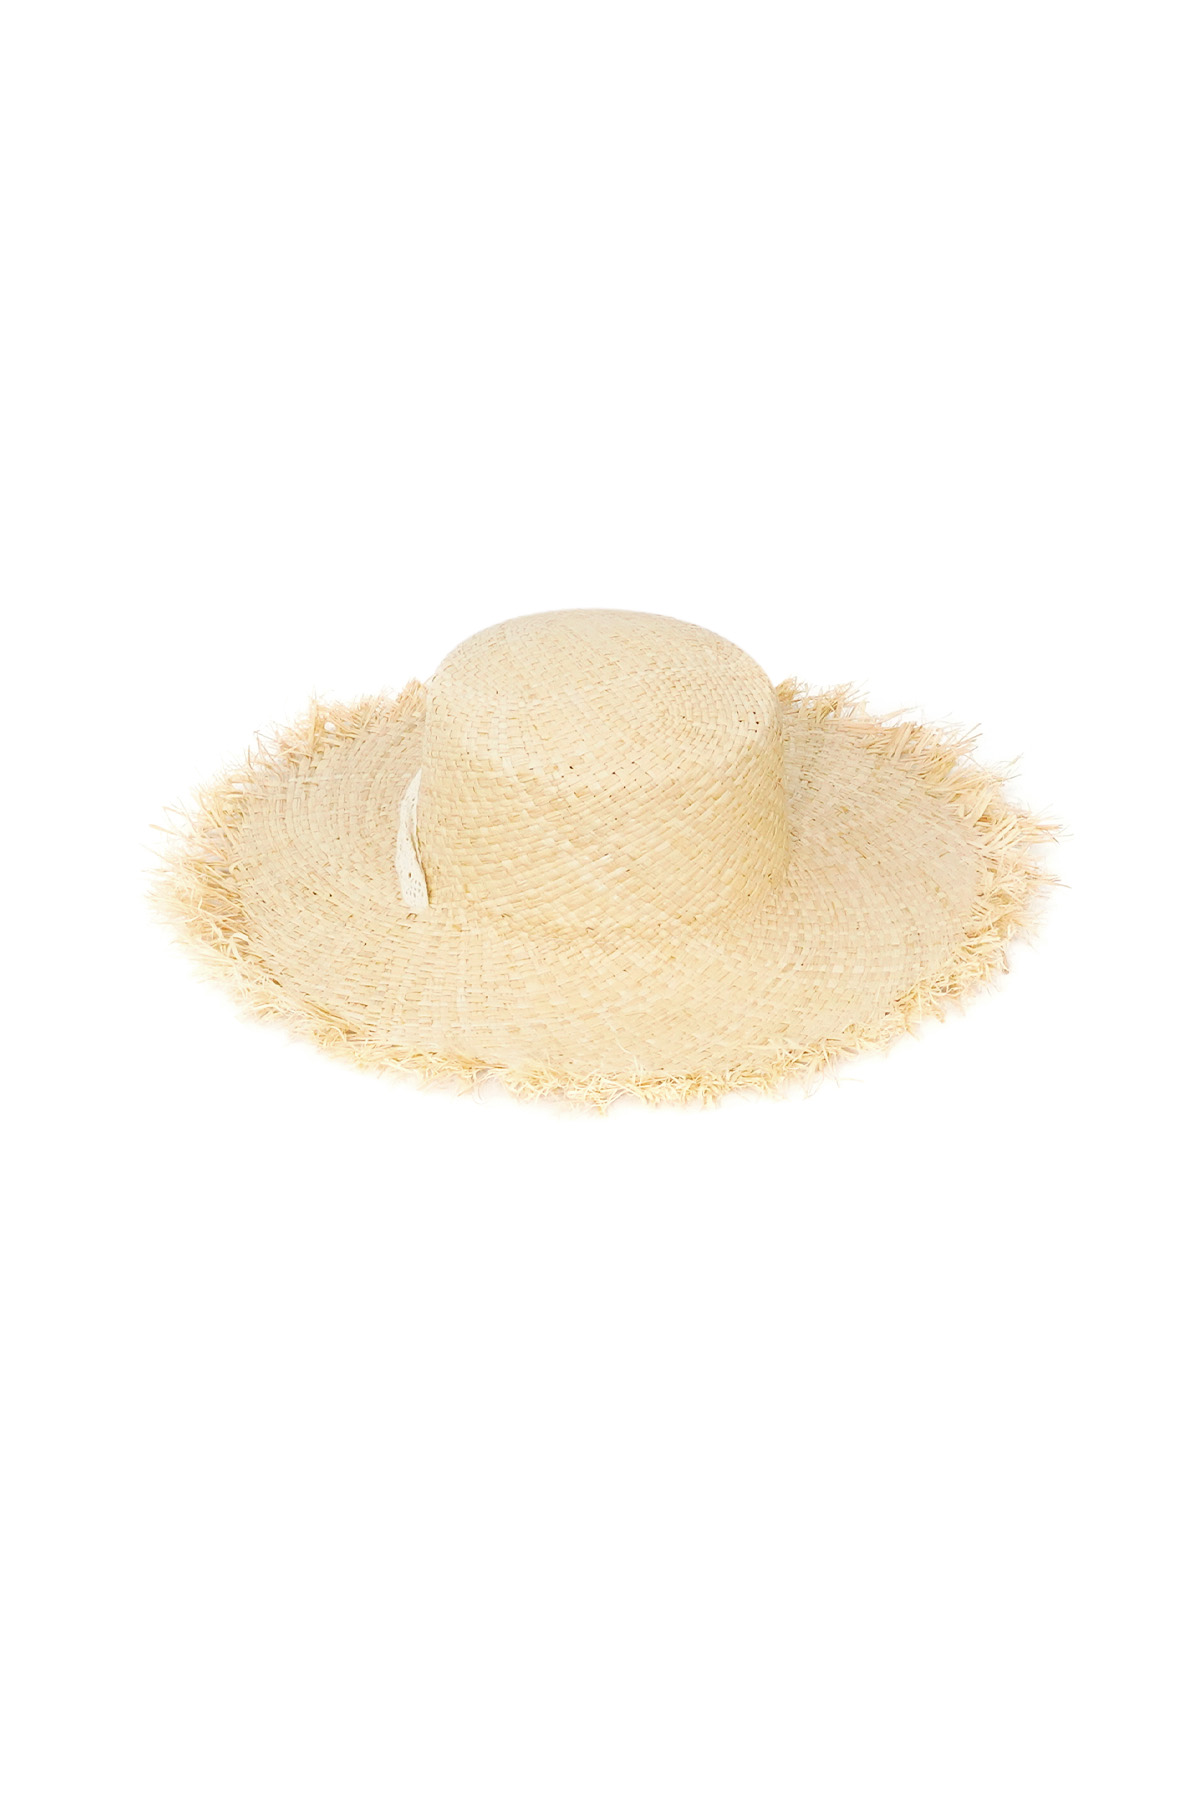 Sombrero estilo playero - blanco roto h5 Imagen5